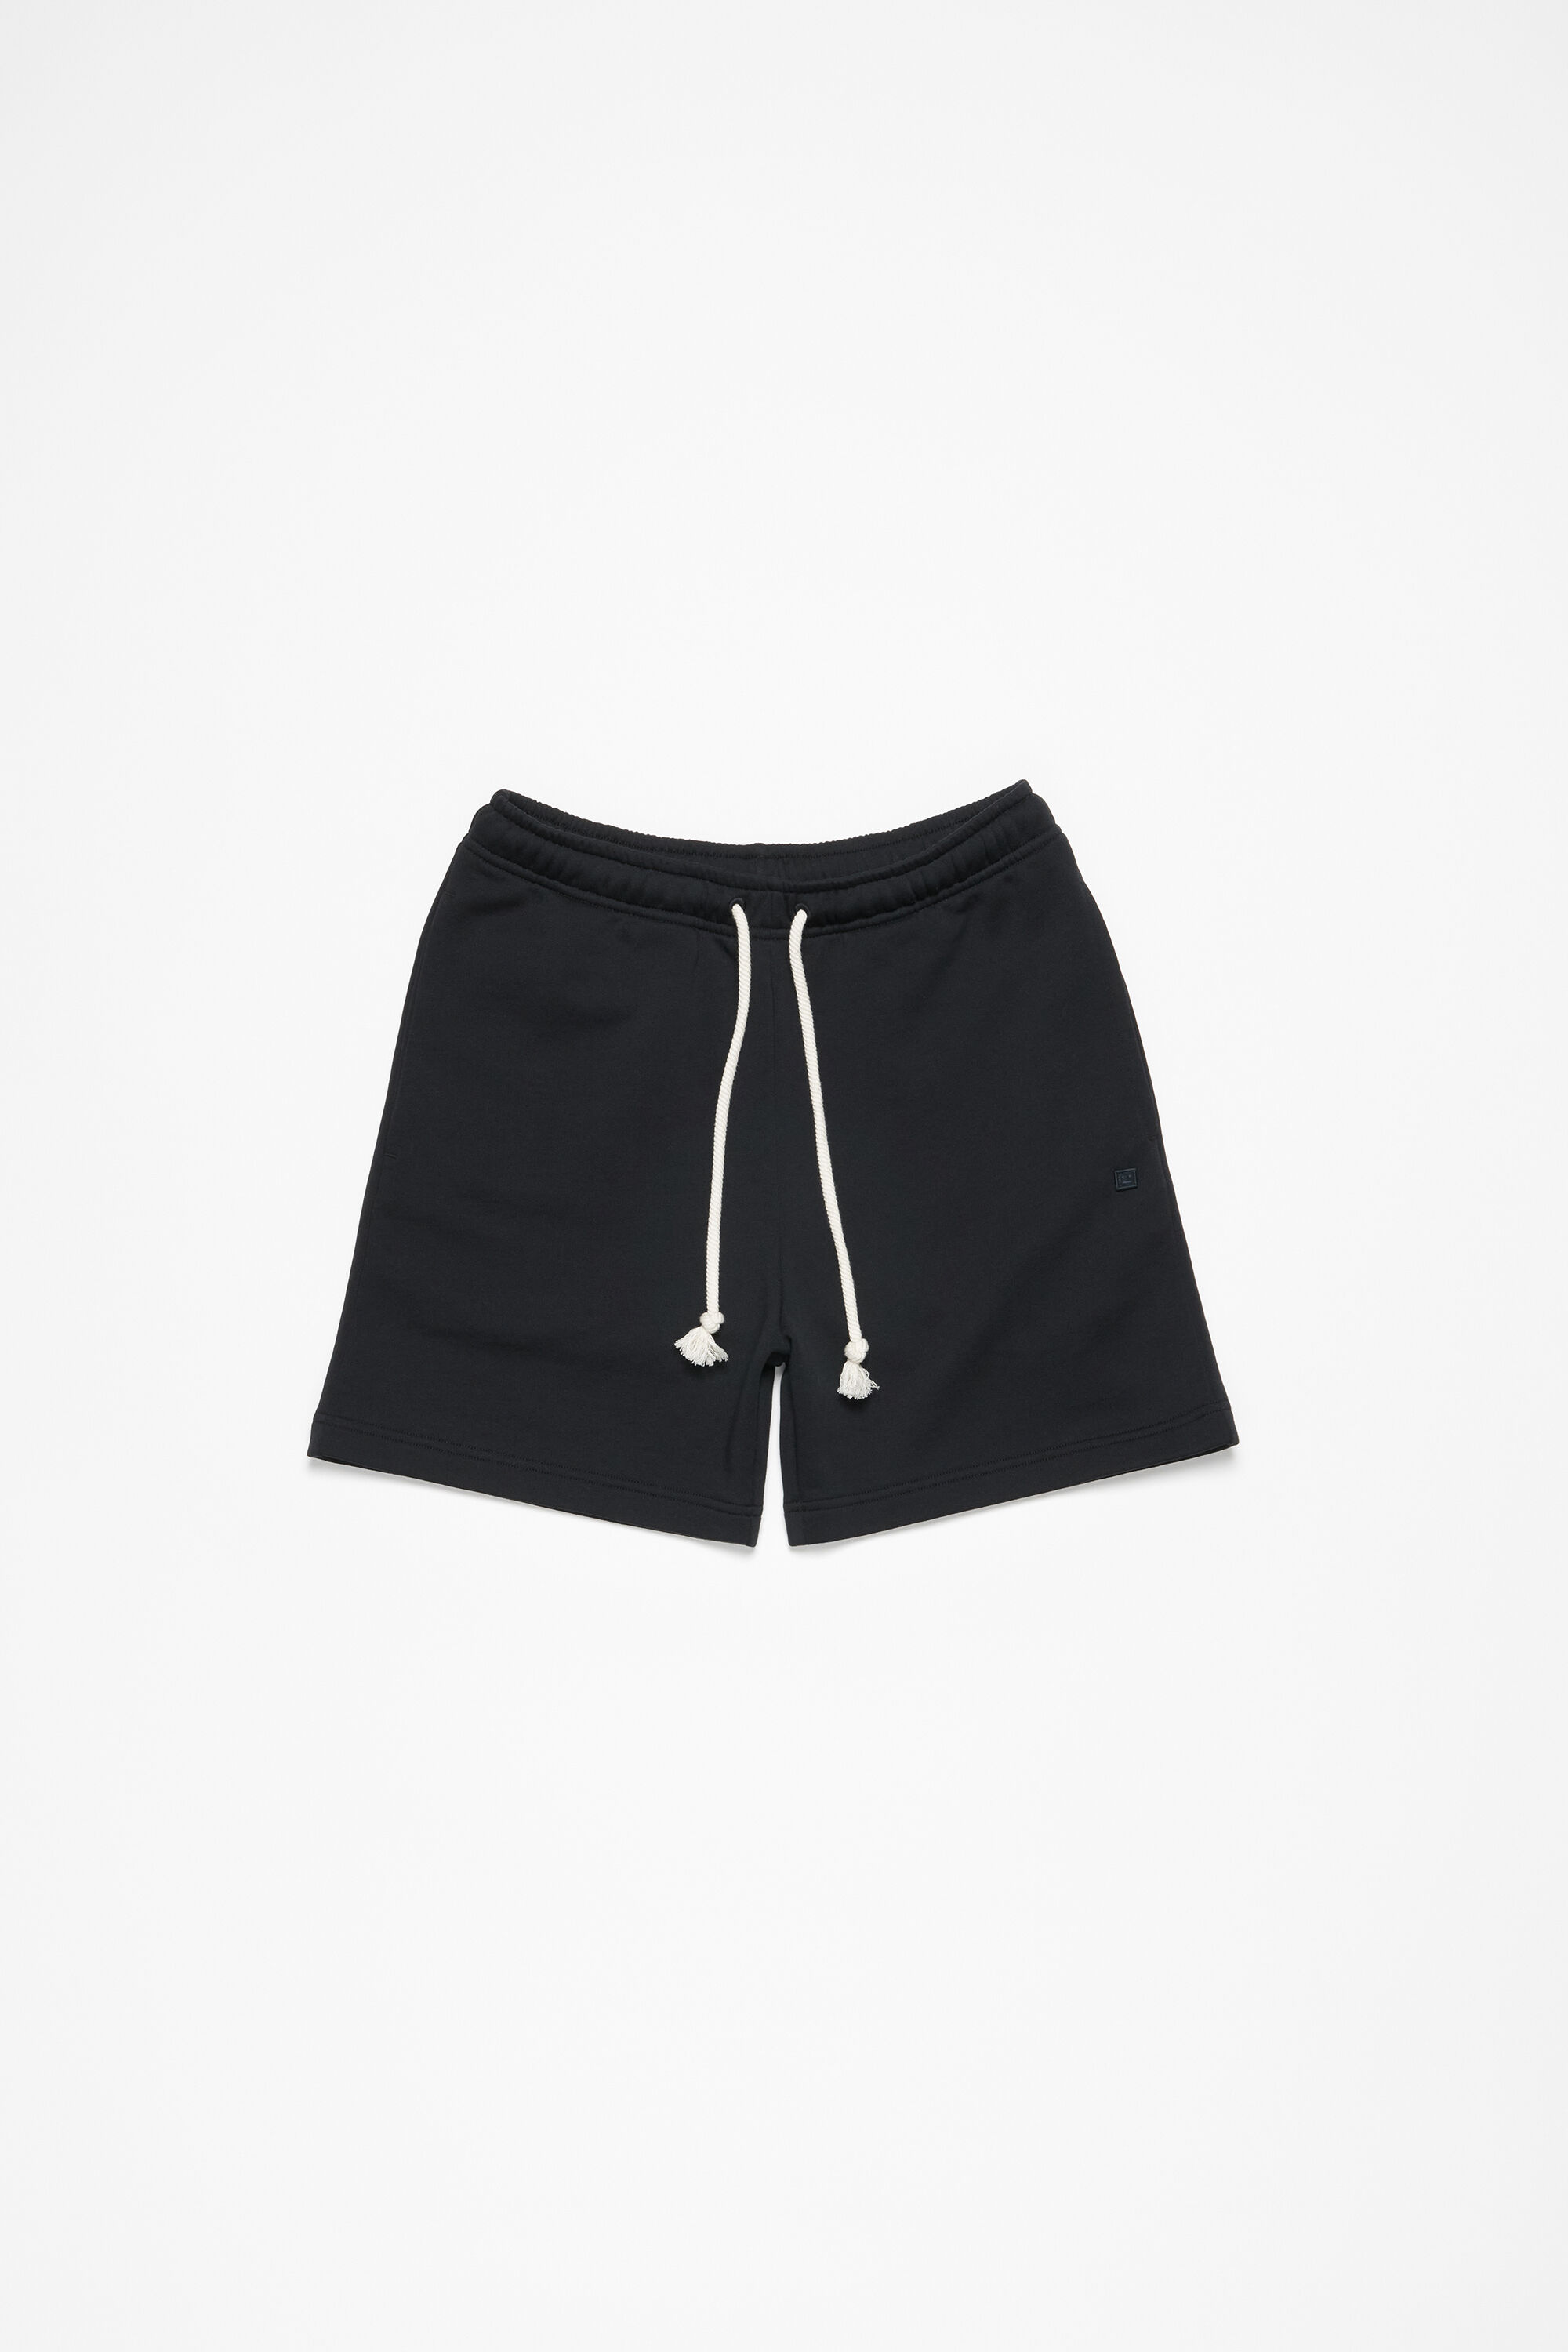 Acne Studios - Fleece shorts - Black